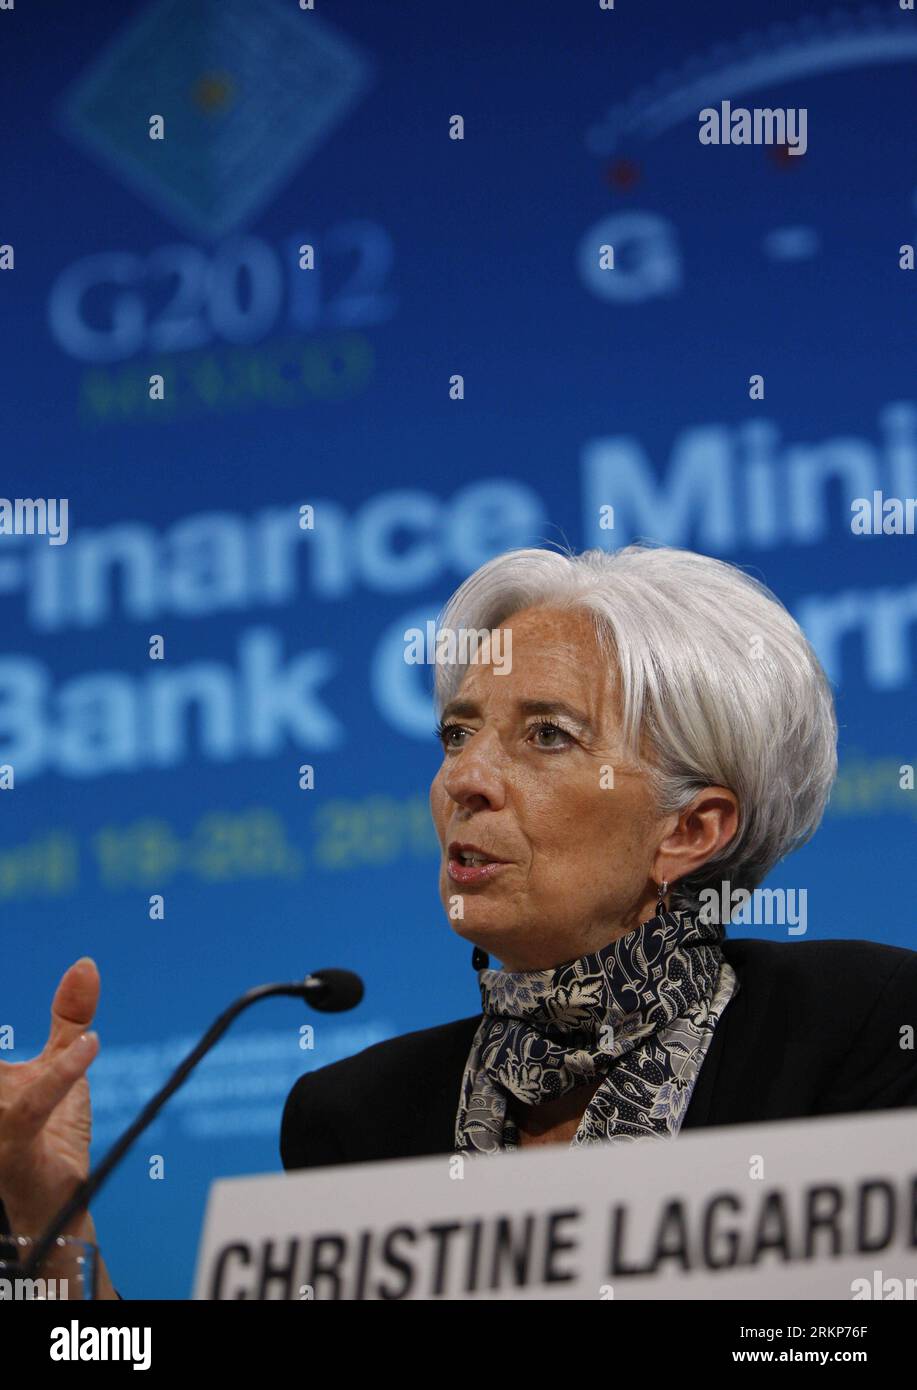 Bildnummer: 57917880 Datum: 20.04.2012 Copyright: imago/Xinhua (120421) -- WASHINGTON, aprile 21,2012 (Xinhua) -- Christine Lagarde, capo del Fondo monetario Internazionale (FMI), parla durante una conferenza stampa a Washington, negli Stati Uniti, il 20 aprile 2012. Le principali economie industriali ed emergenti del G20 hanno accettato di potenziare la capacità creditizia del FMI con impegni che aumenterebbero le risorse dell'istituzione di oltre 430 miliardi di dollari, una mossa che quasi raddoppierà il potere creditizio totale del FMI. (xinhua/Fang Zhe) US-WASHINGTON-FMI-G20-RISORSE EXTRA PUBLICAT Foto Stock